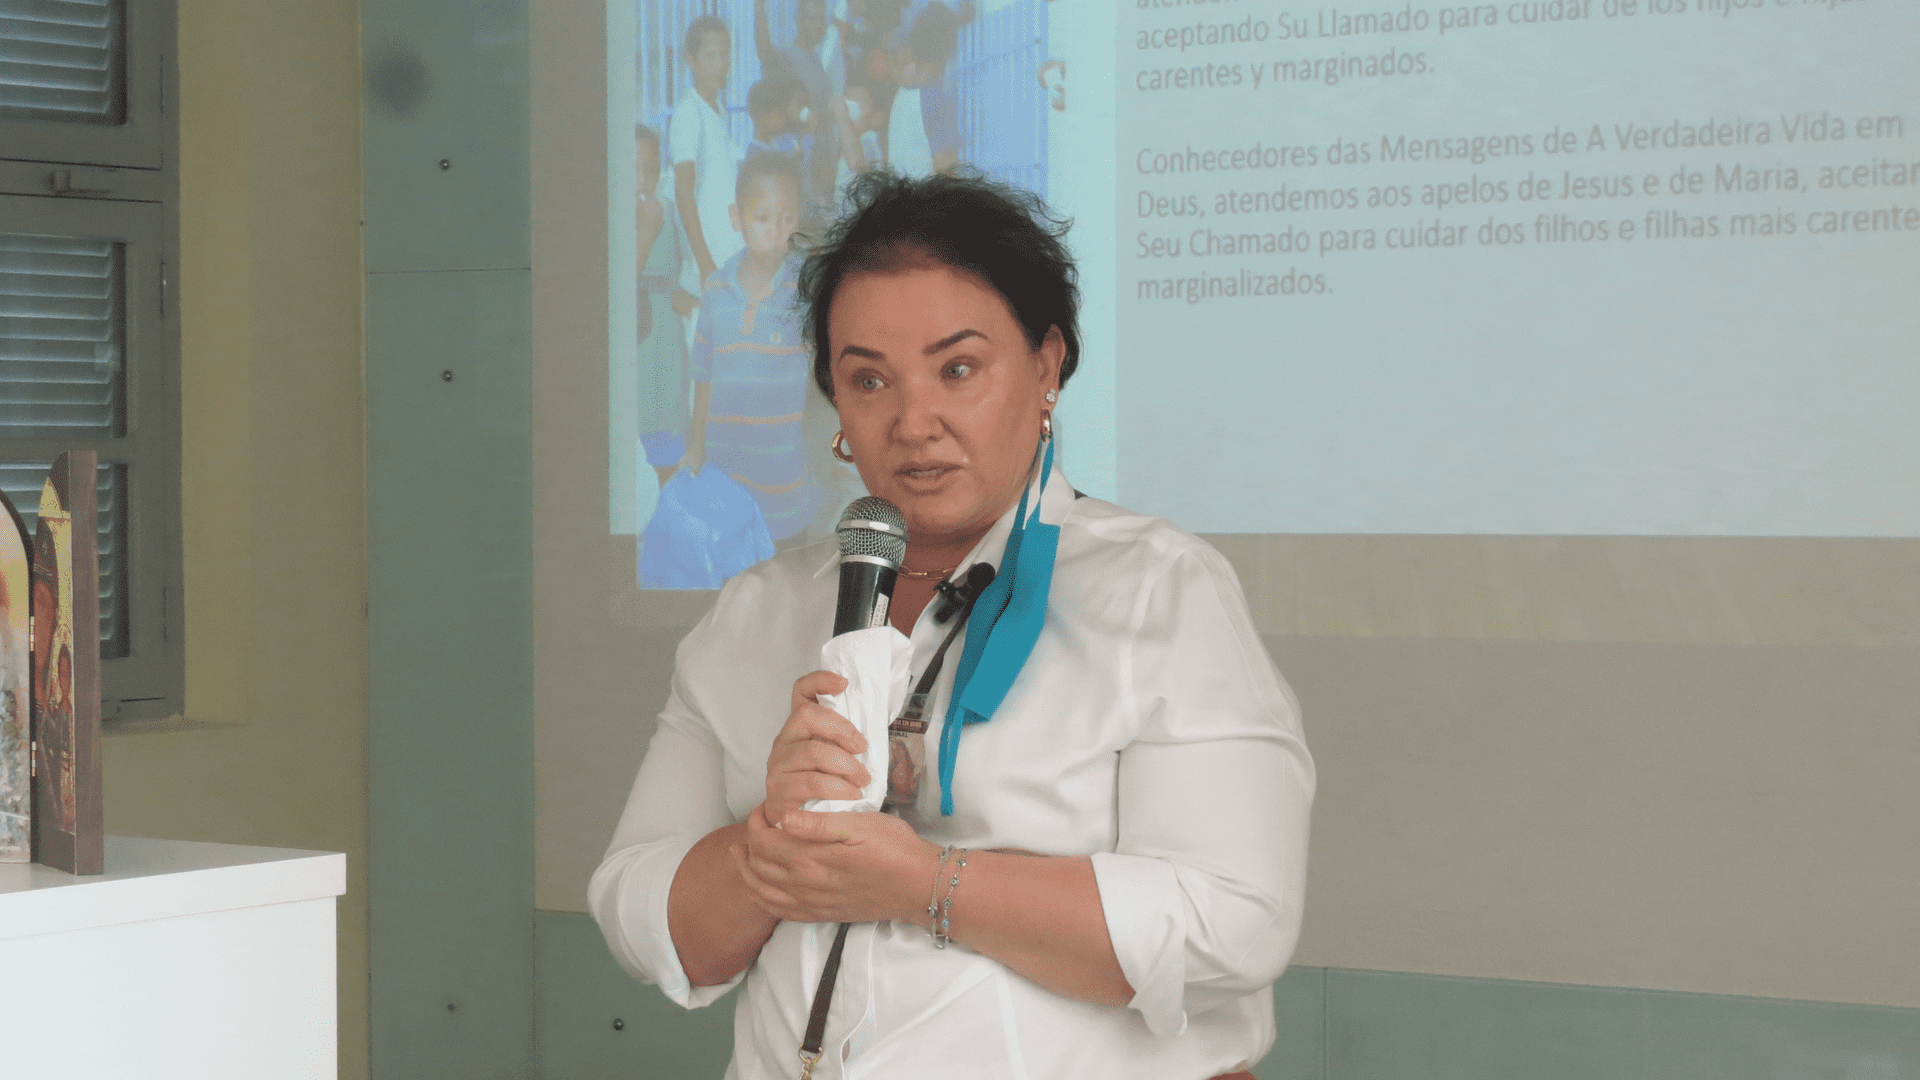 14 Retiro Nacional - Florianópolis - SC : Testemunhos de A Verdadeira Vida em Deus - Srª Carla.